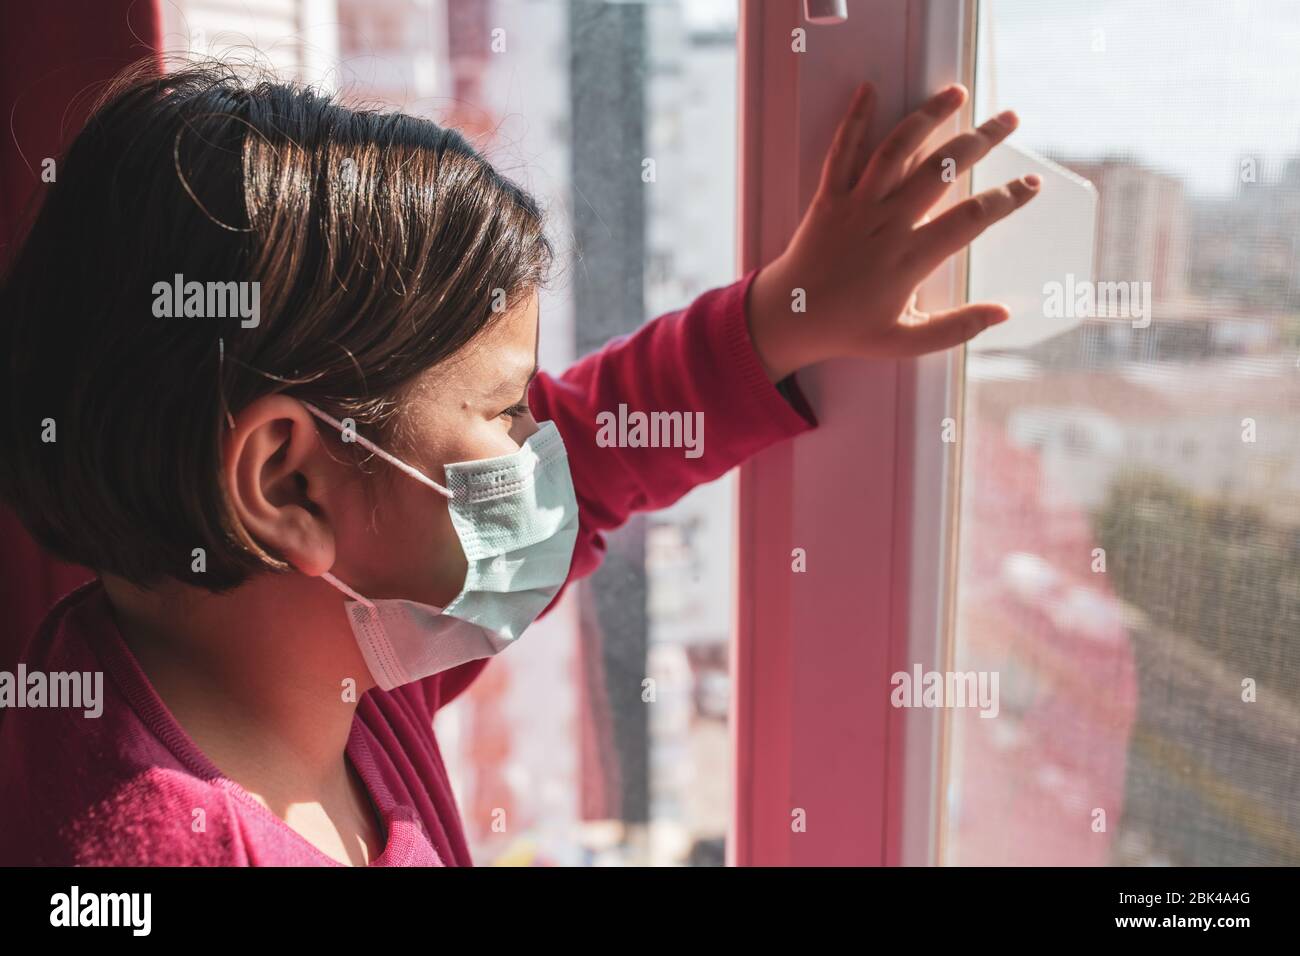 Petite fille, enfant dans le masque médical sur les fenêtres, quarantaine du coronavirus Covid-19, école à domicile. Restez à la maison. Concept de quarantaine du coronavirus Covid-19 Banque D'Images